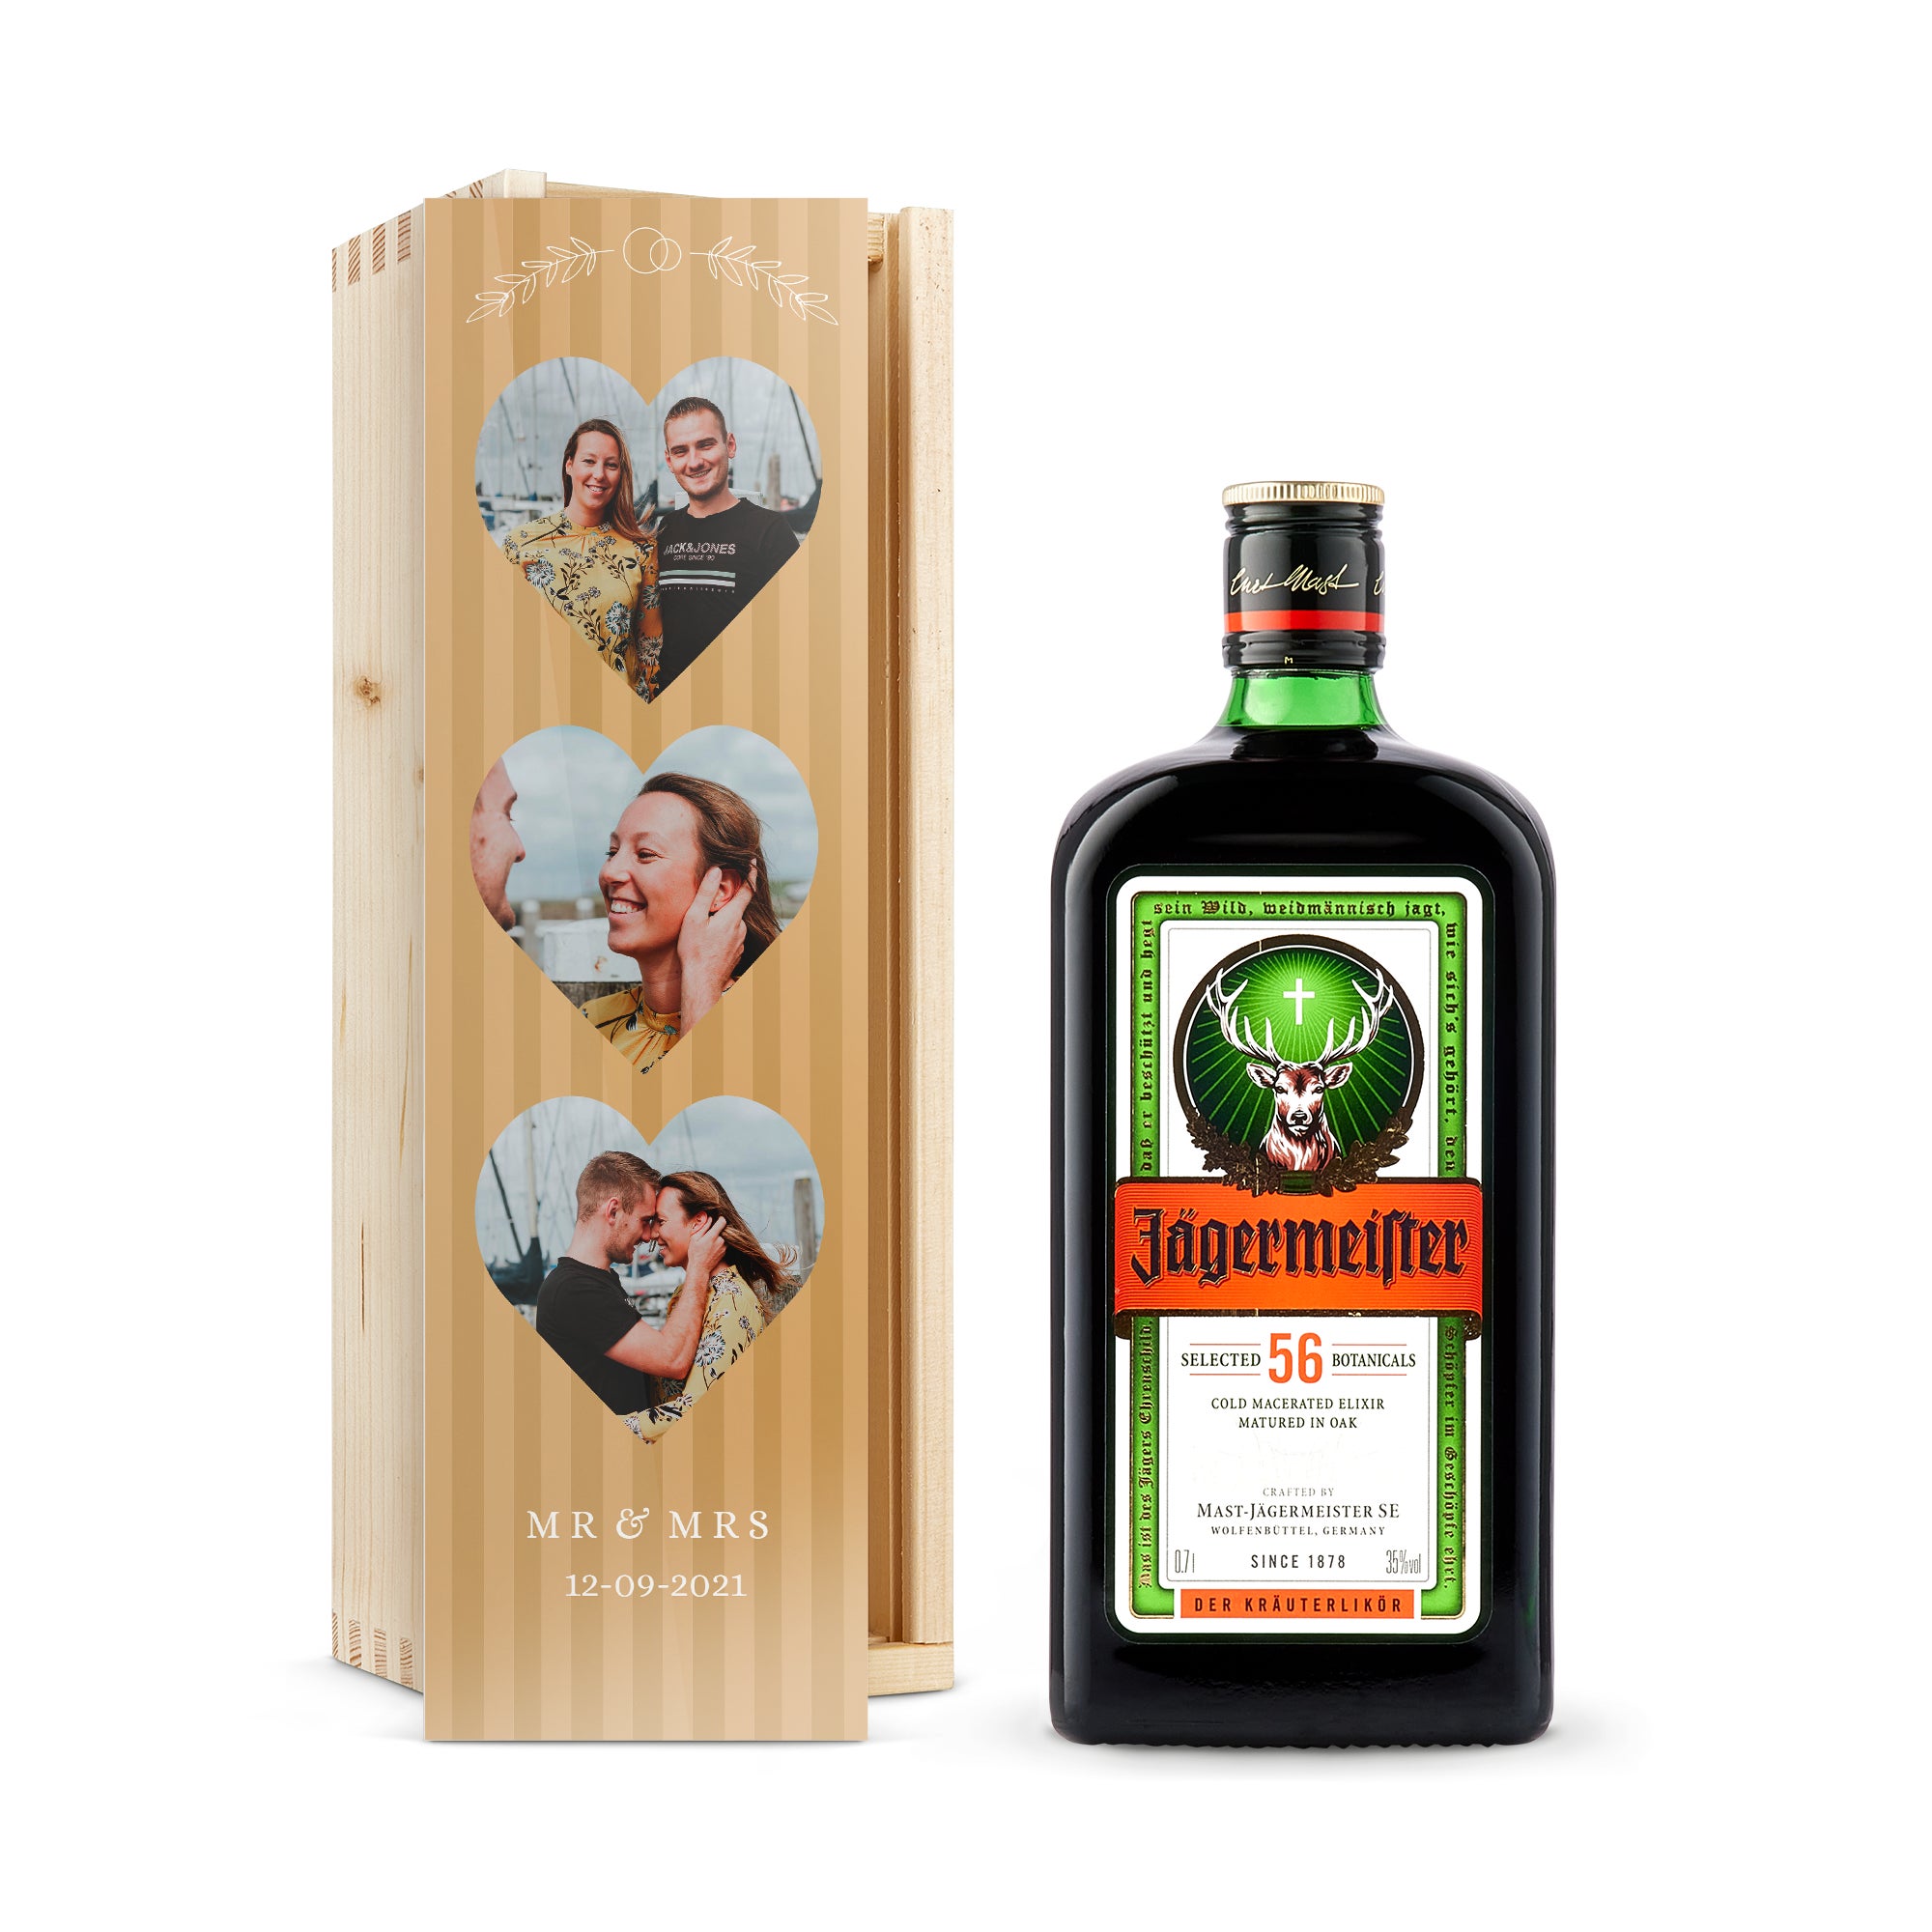 Personalised spirits - Jagermeister - Printed wooden case